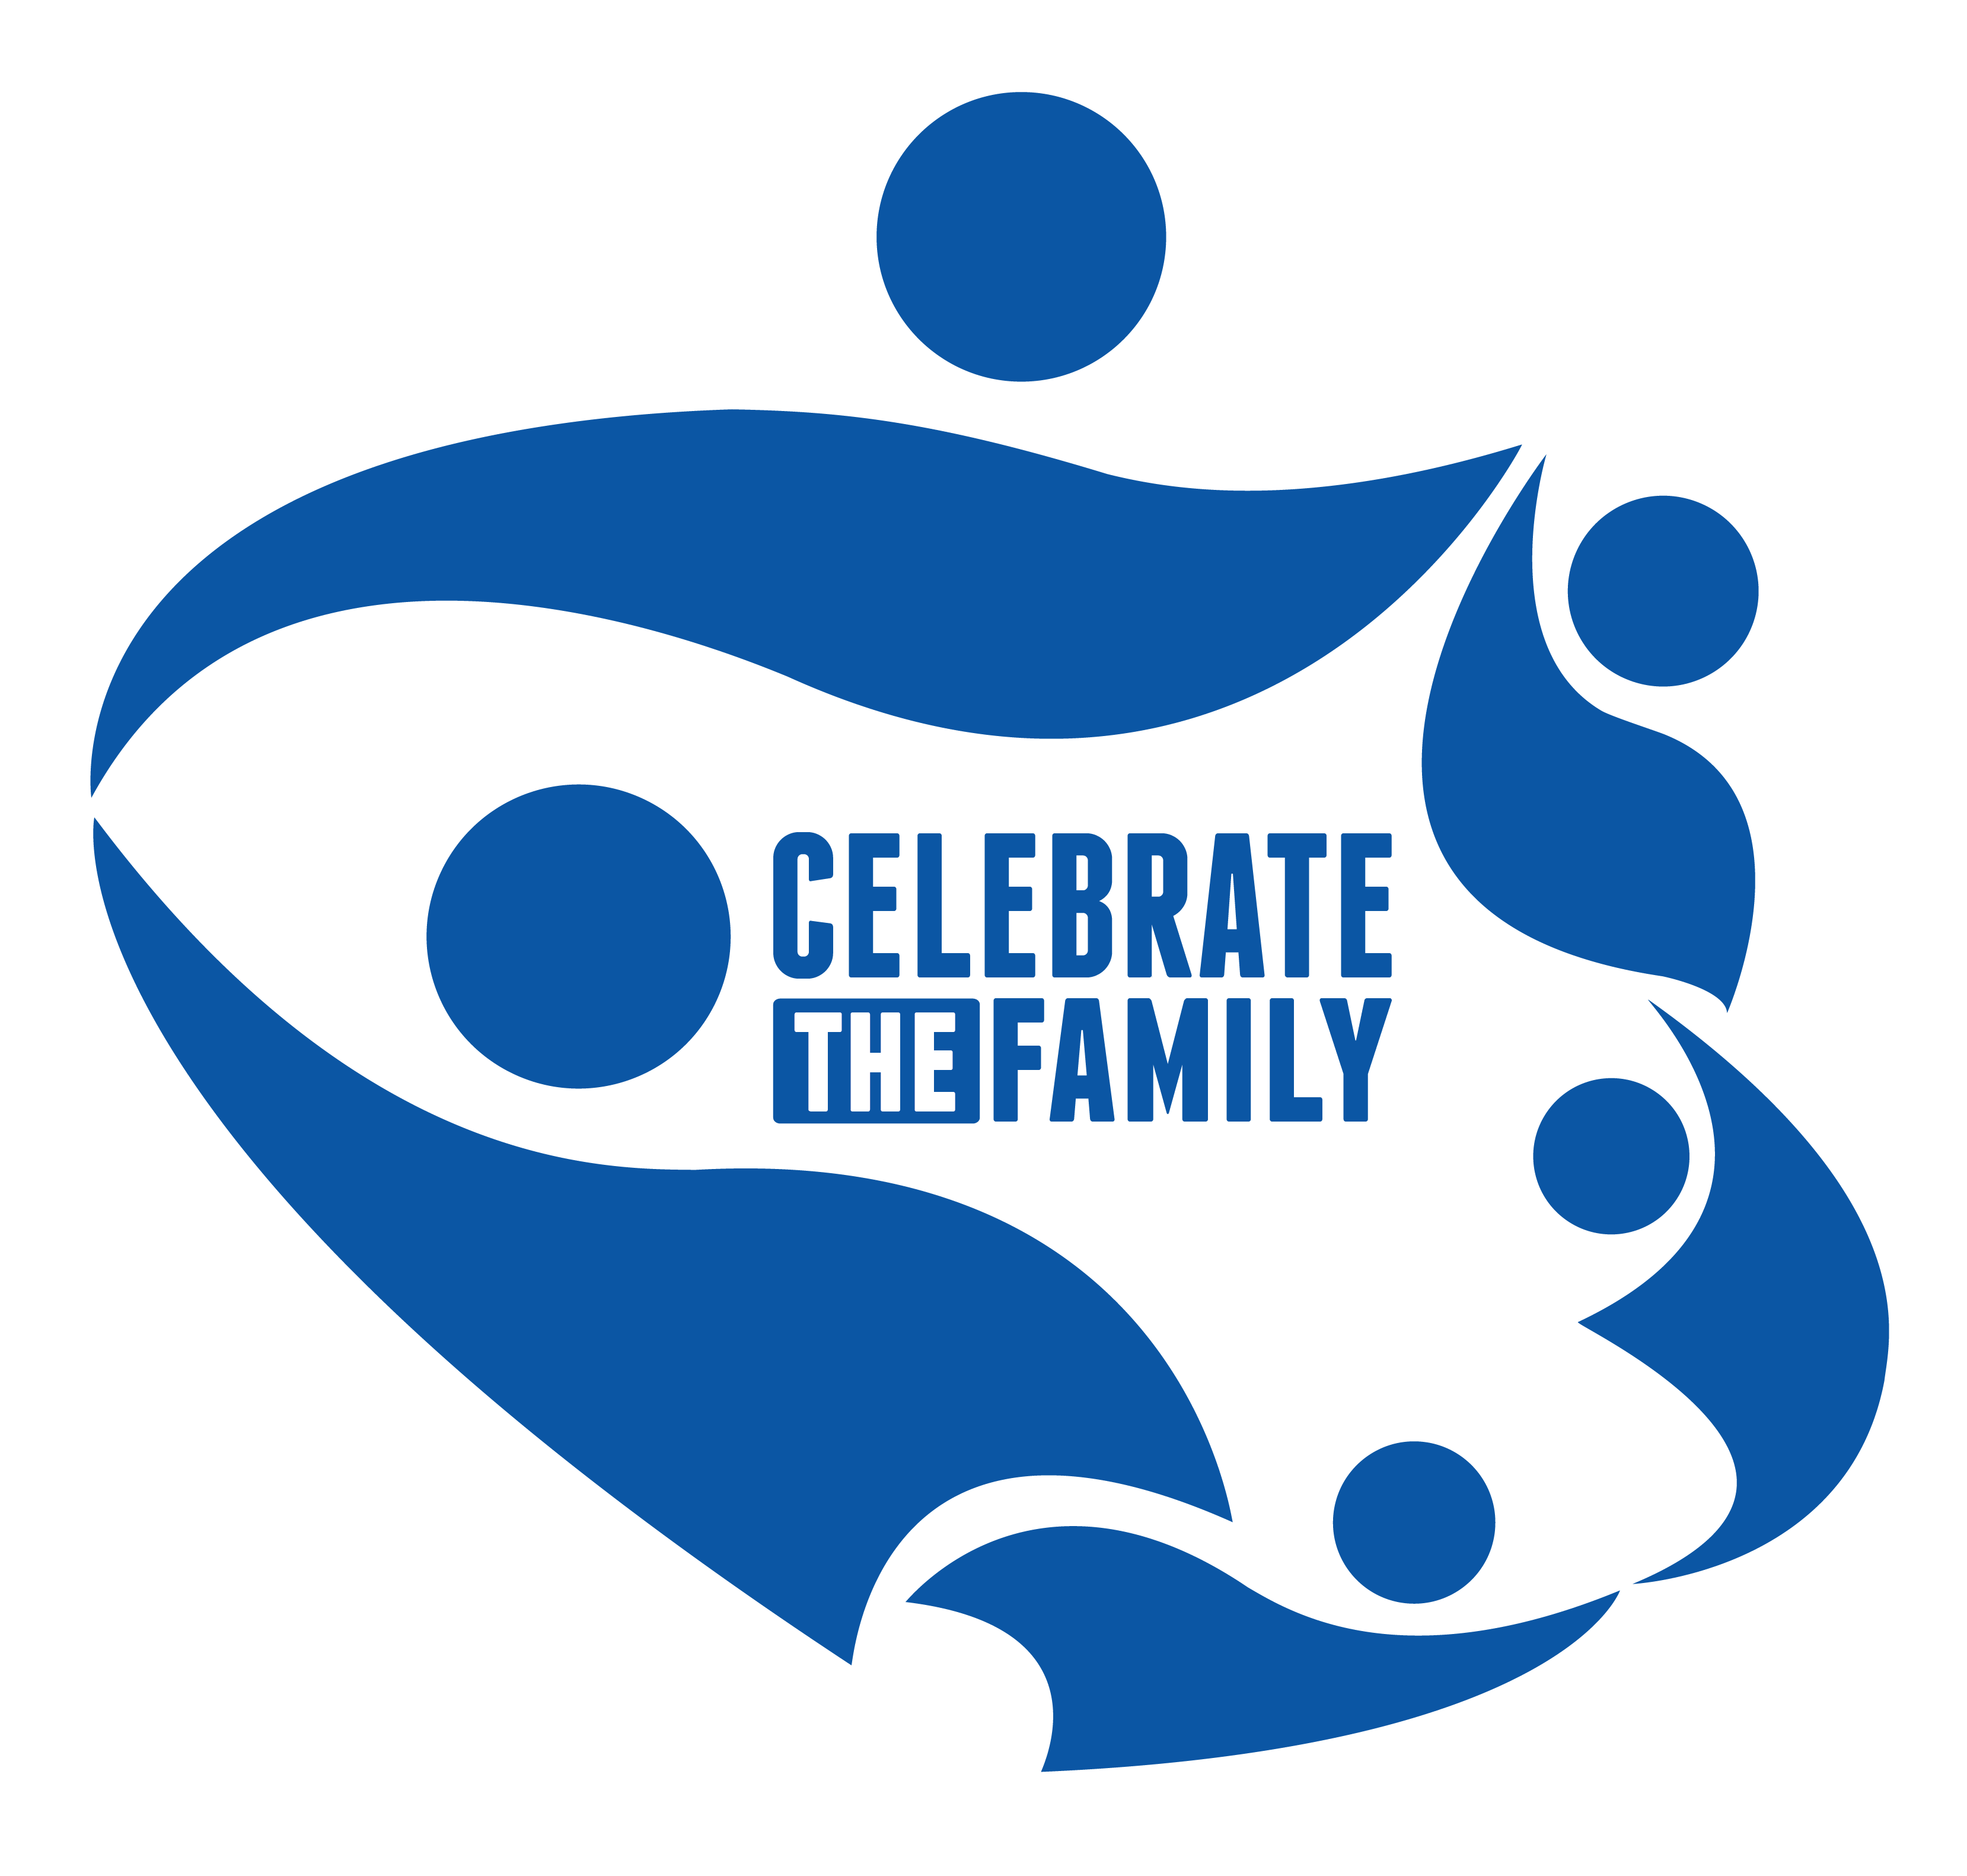 United Family Logo - World Youth Alliance. WYA Celebrates the Family